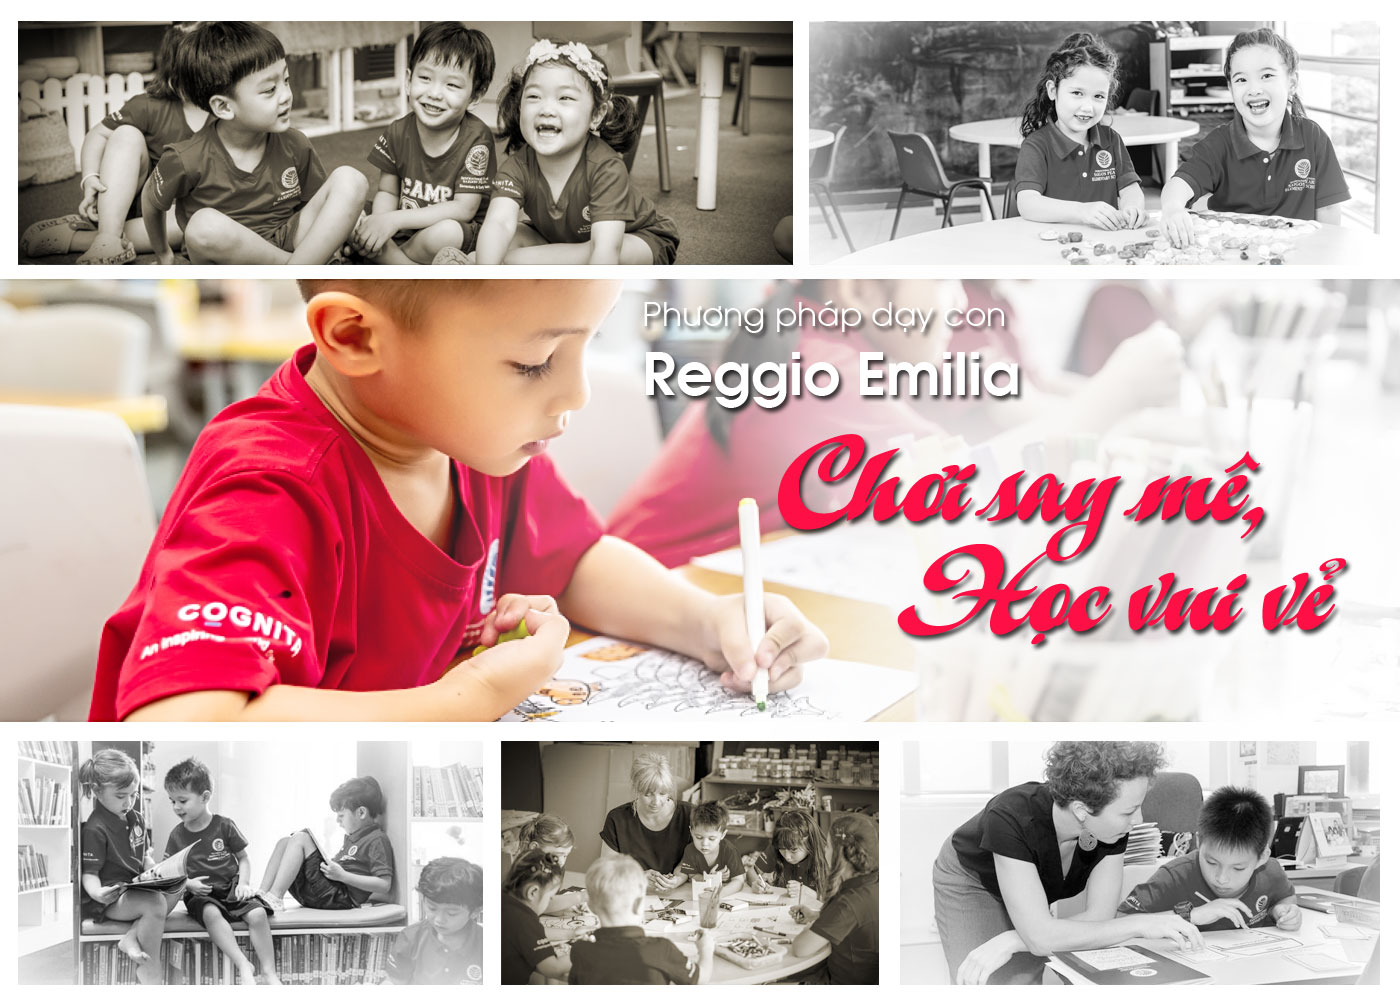 Phương pháp dạy con Reggio Emilia - chơi say mê, học vui vẻ - Ảnh 1